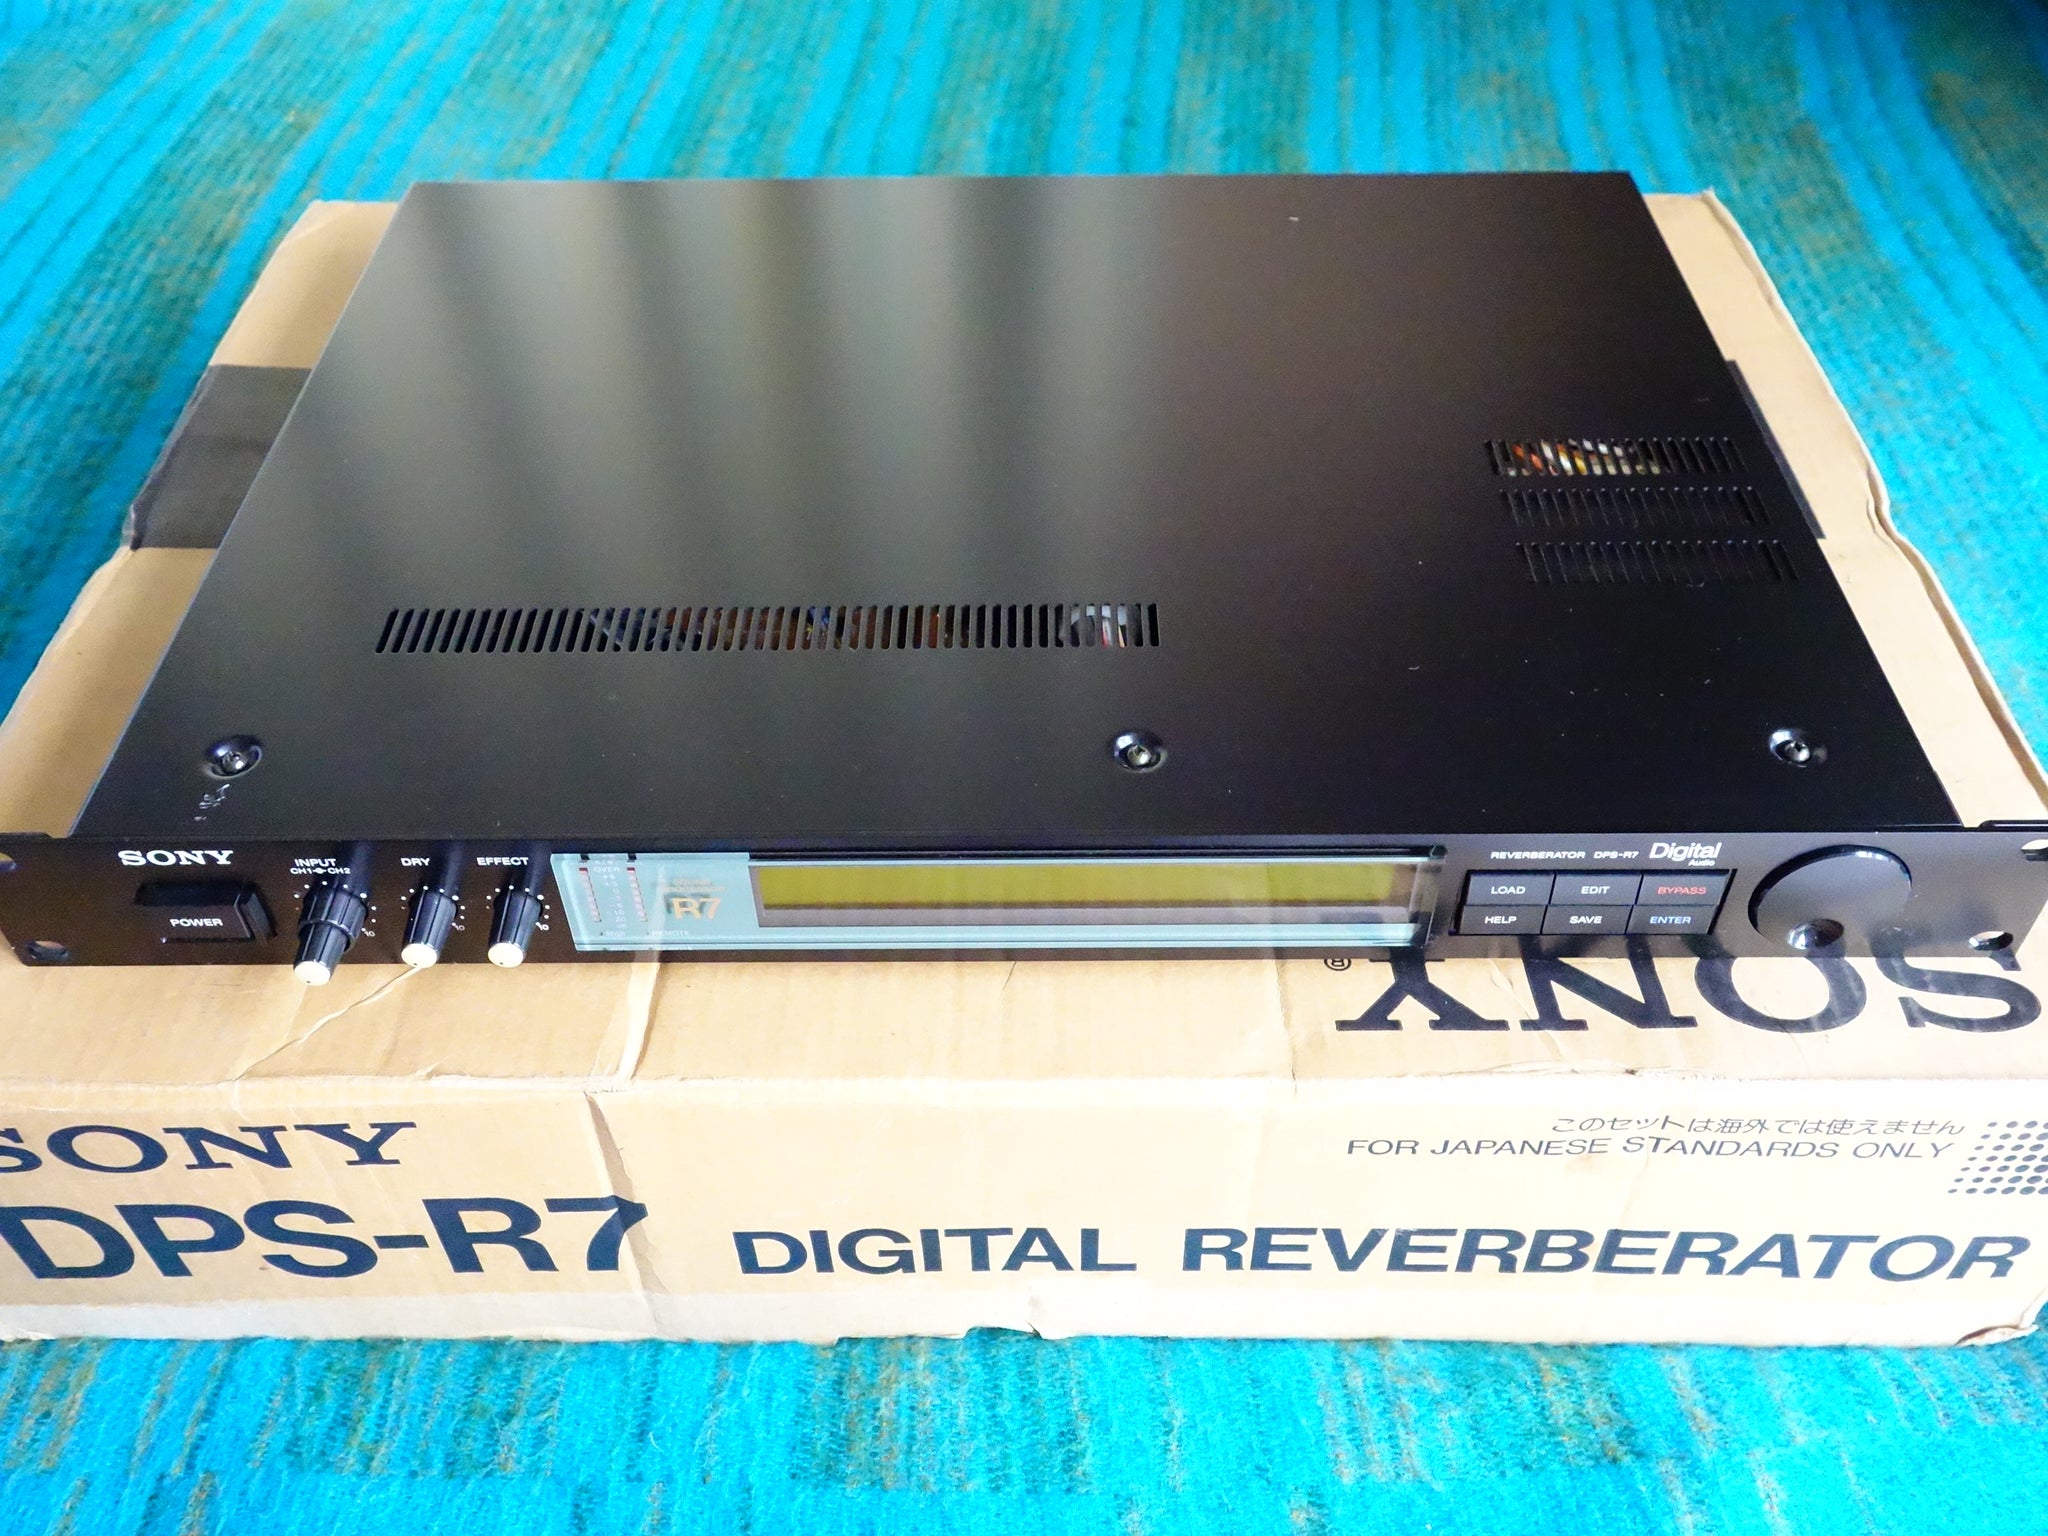 Sony DPS-R7 Digital Reverberator - w/ Original Box - Serviced - I002